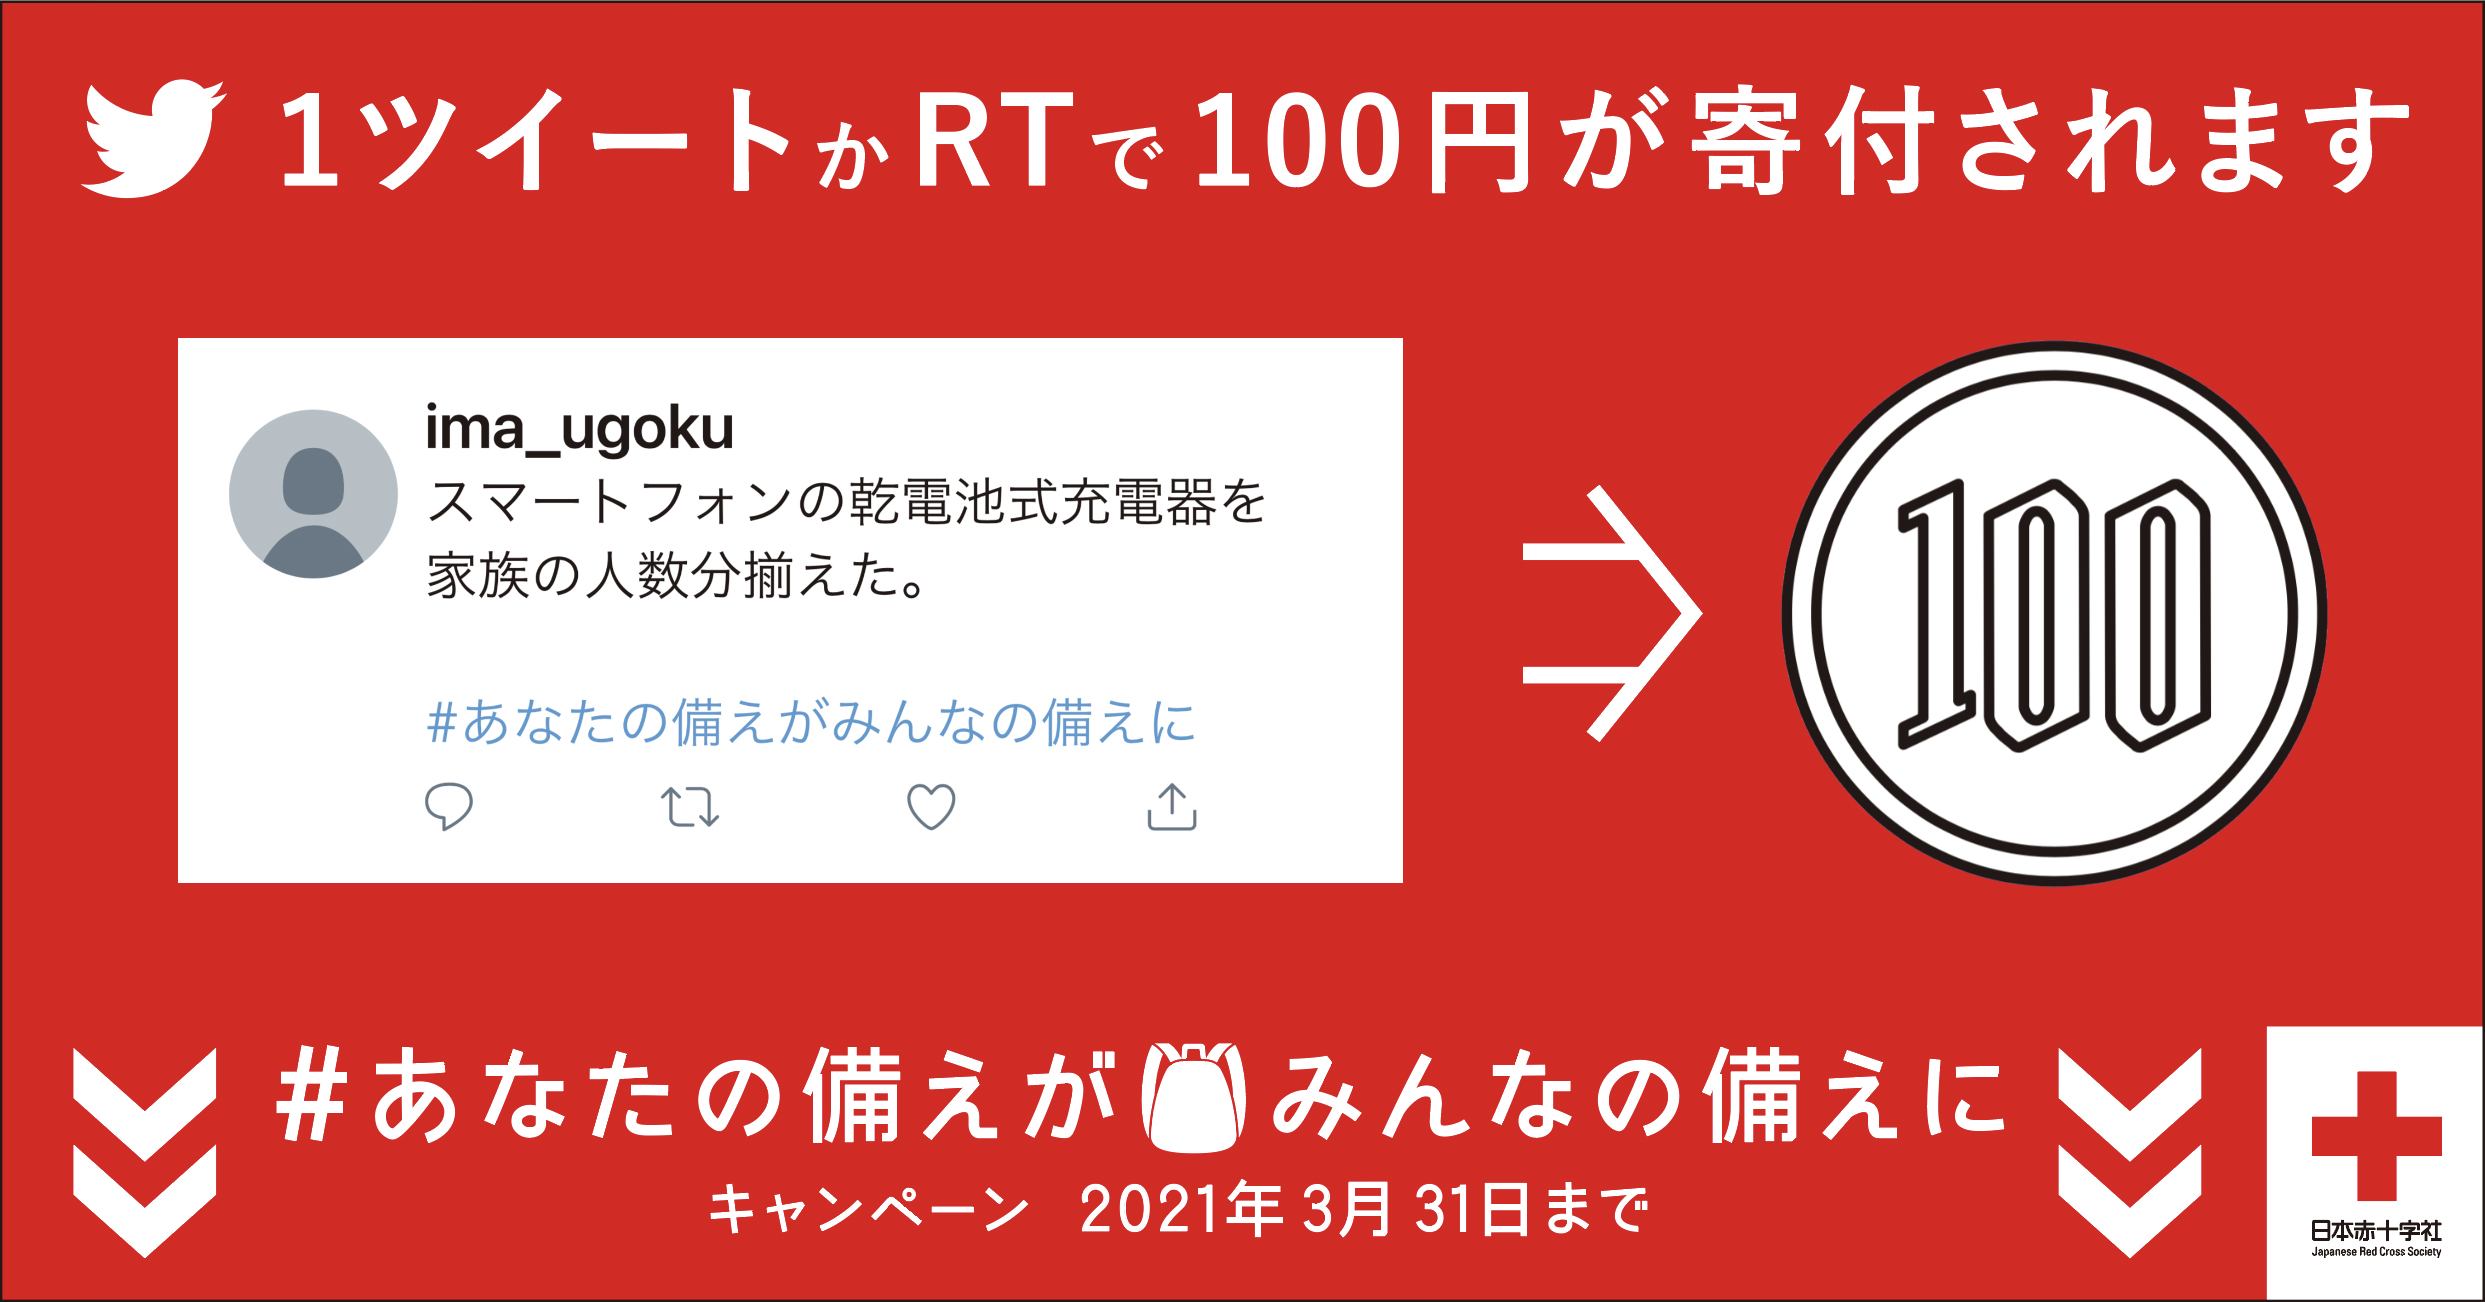 東日本大震災から10年 日本赤十字社の新プロジェクト Action 防災 減災 命のために今うごく の第一弾 あなたの備えがみんなの備えに キャンペーン Twitter上で3月1日から開始 日赤のプレスリリース